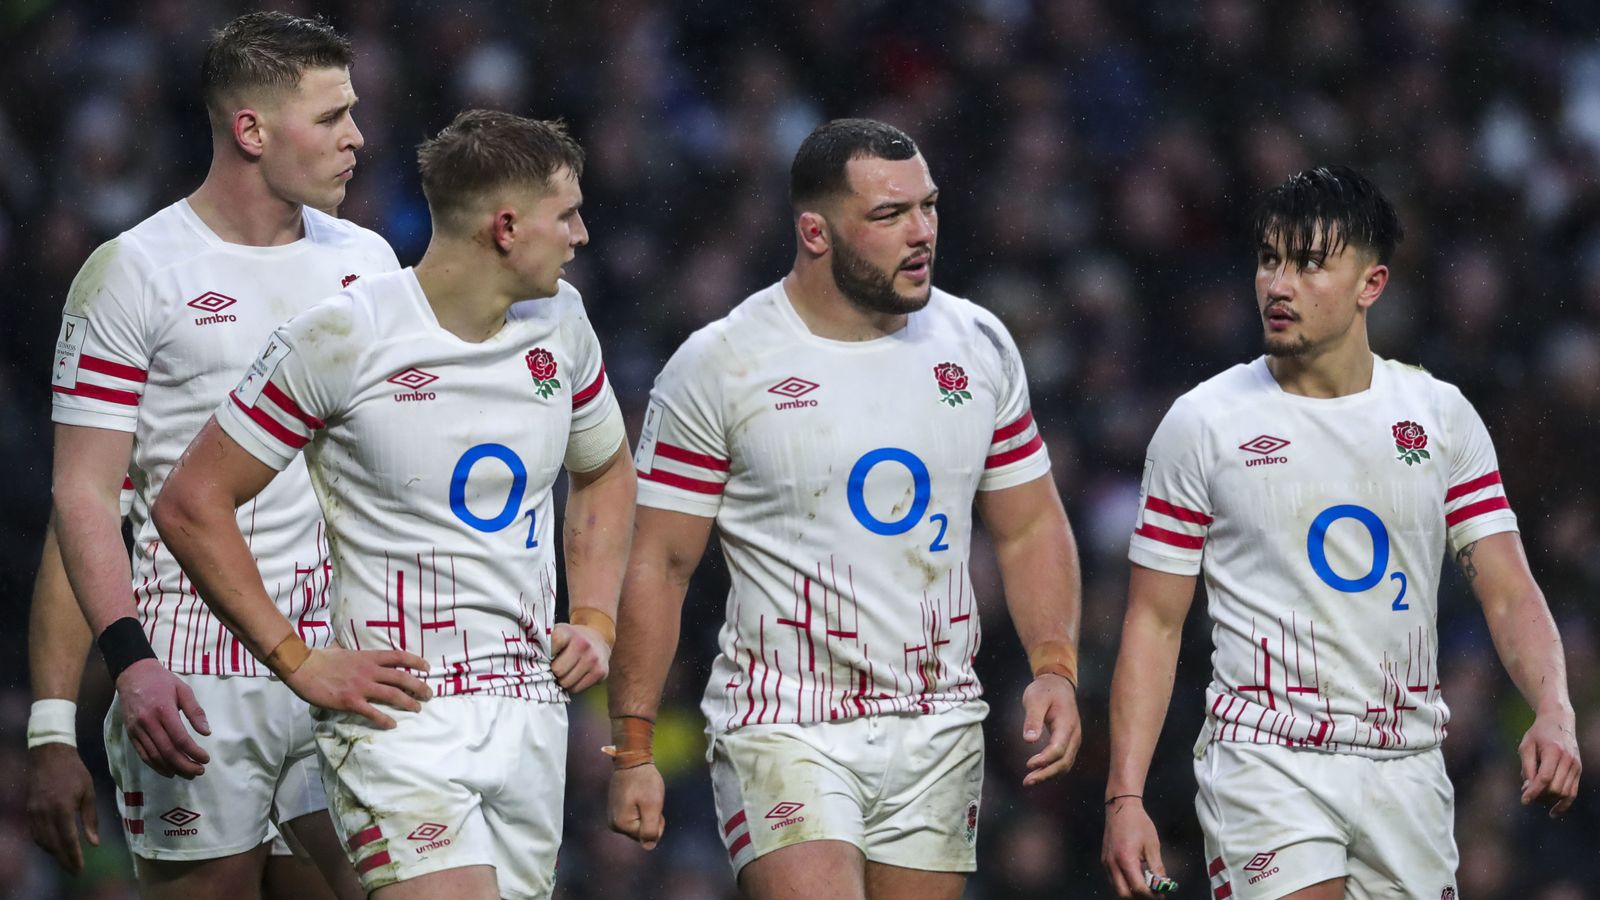 Ellis Genge: l’équipe d’Angleterre a conclu un pacte pour que la défaite des Six Nations en France ne puisse pas se répéter |  Actualités du rugby à XV